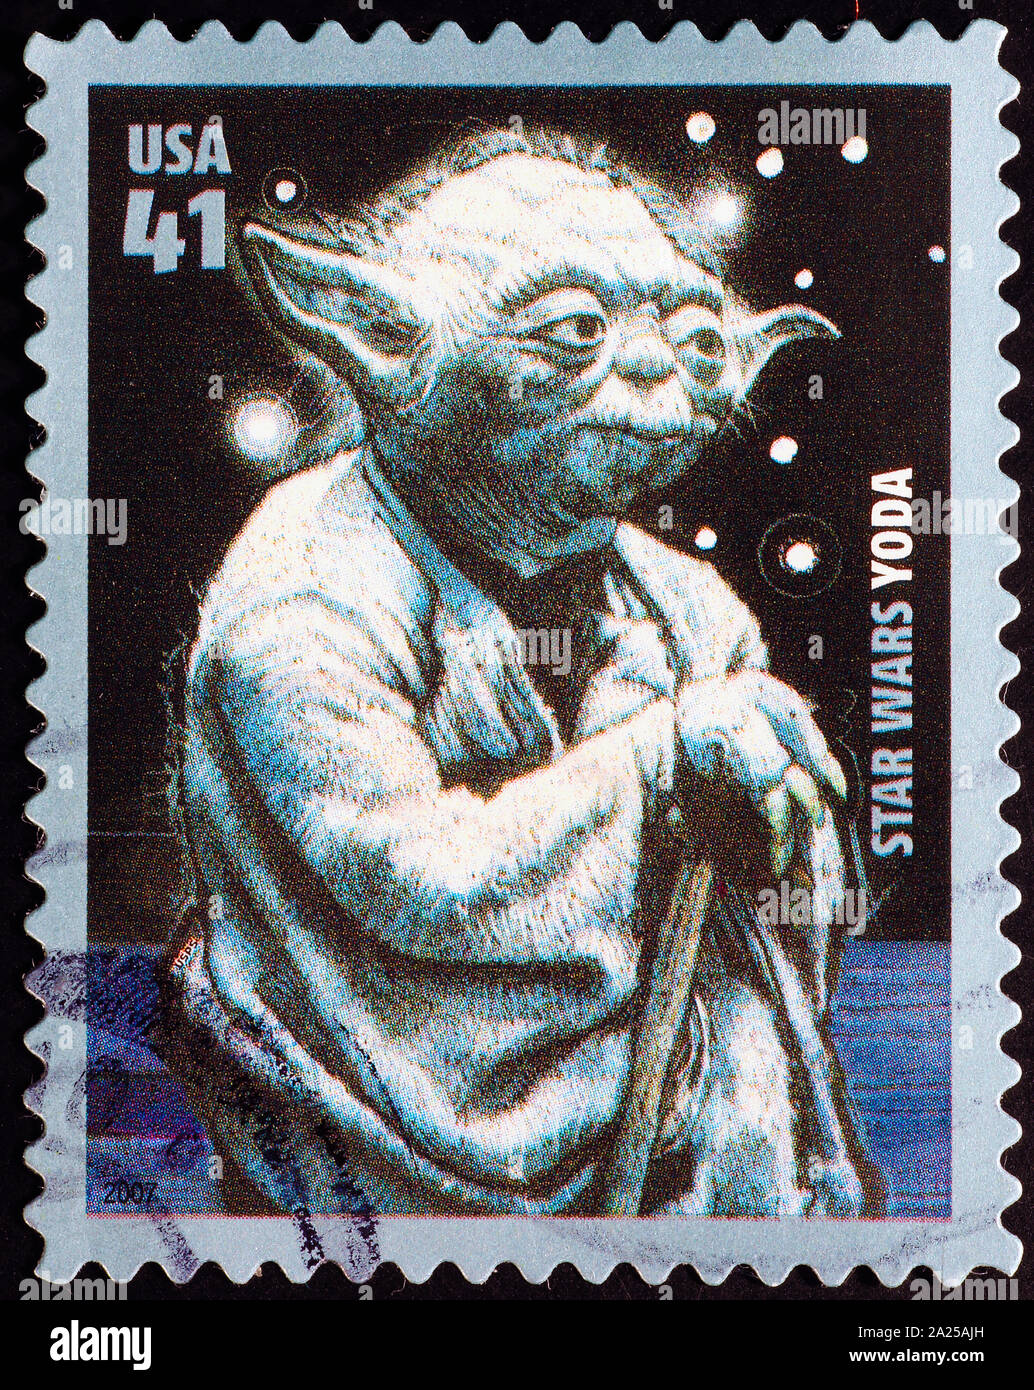 Fiktionale Charakter Yoda auf amerikanische Briefmarke Stockfoto